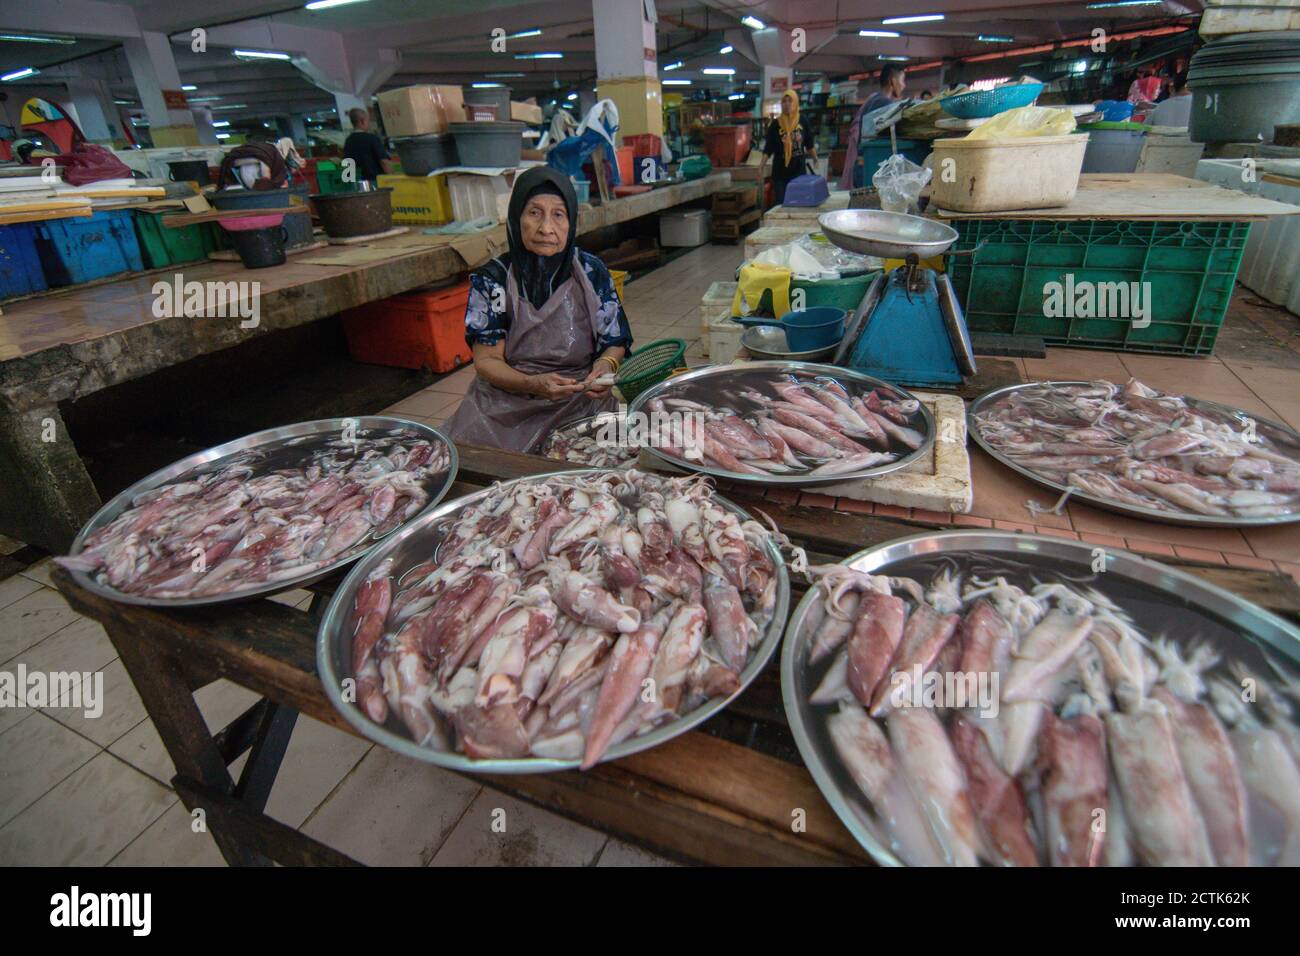 Kota Bahru, Kelantan/Malaysia - Jul 15 2017: A woman sell squid at Pasar Siti Khadijah. Stock Photo